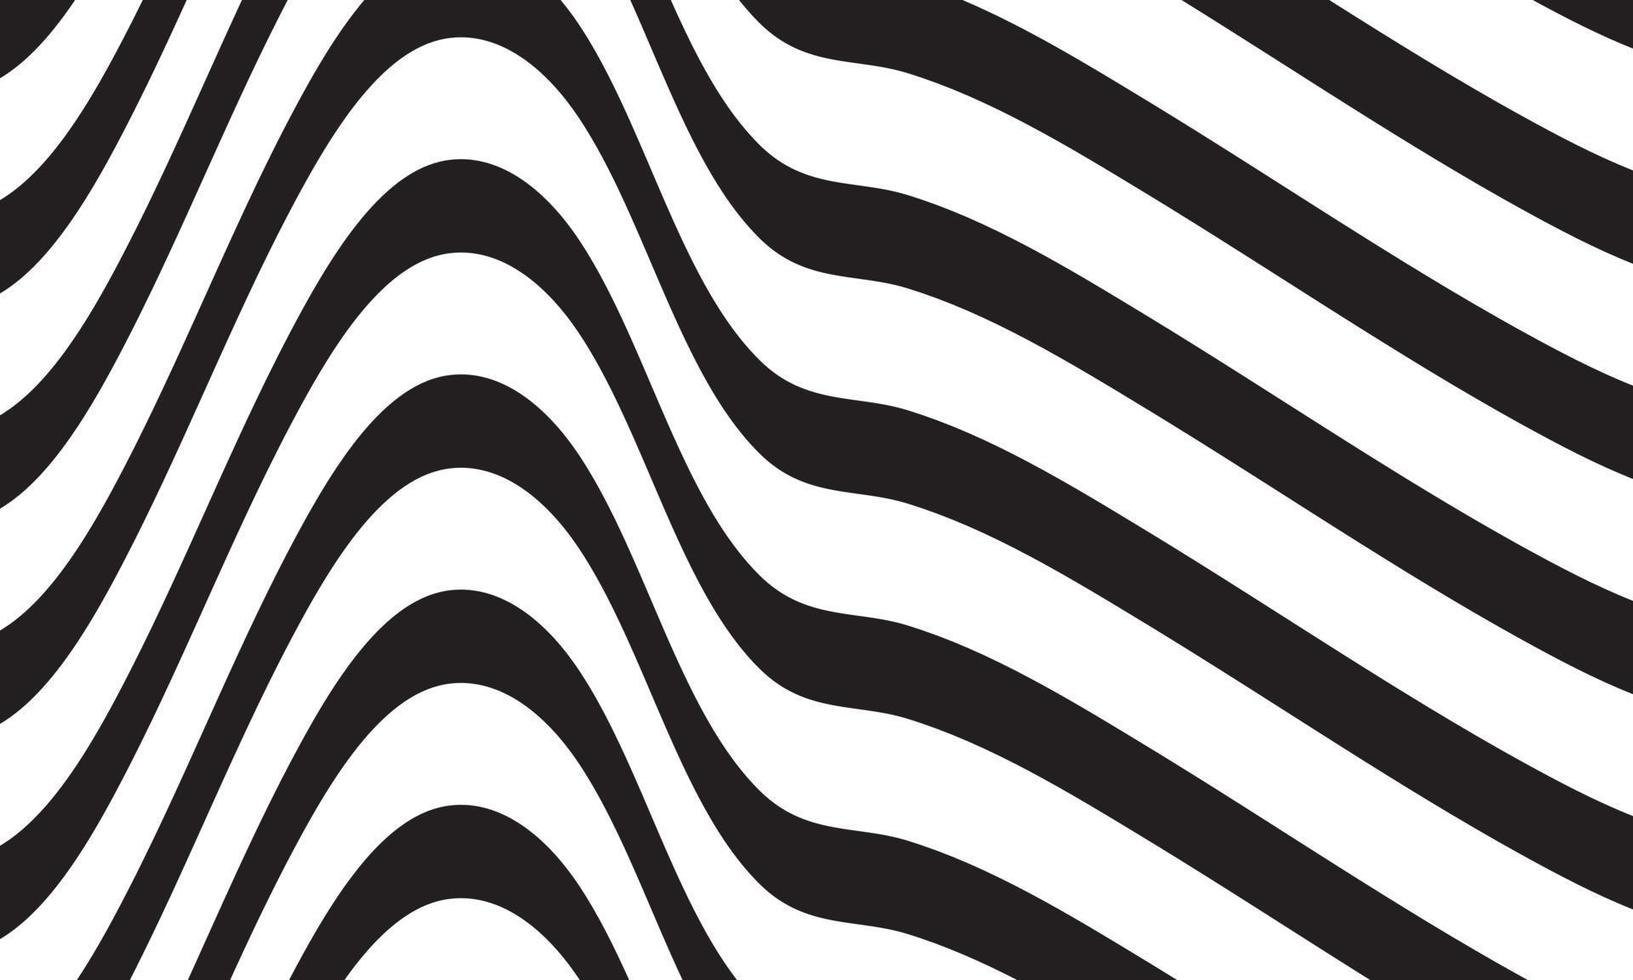 sfondo astratto a righe in bianco e nero con motivo a linee ondulate. vettore